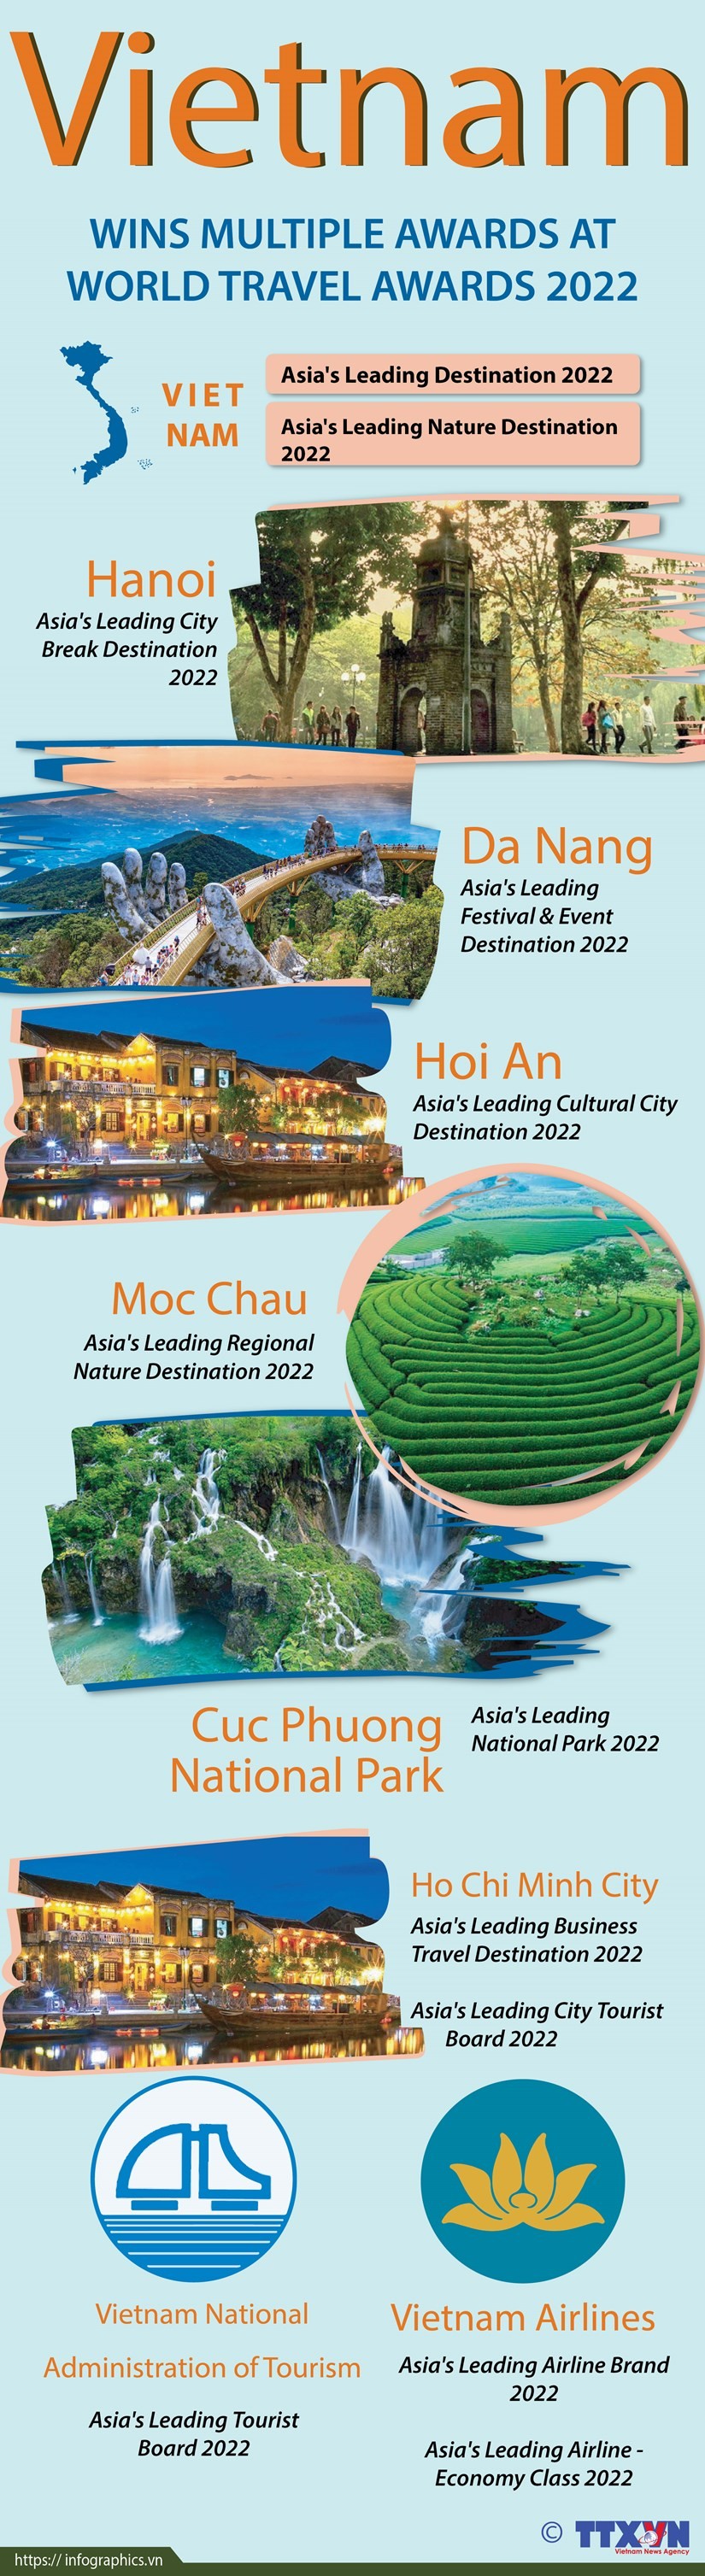 Vietnam wins multiple awards at World Travel Awards 2022 ảnh 1